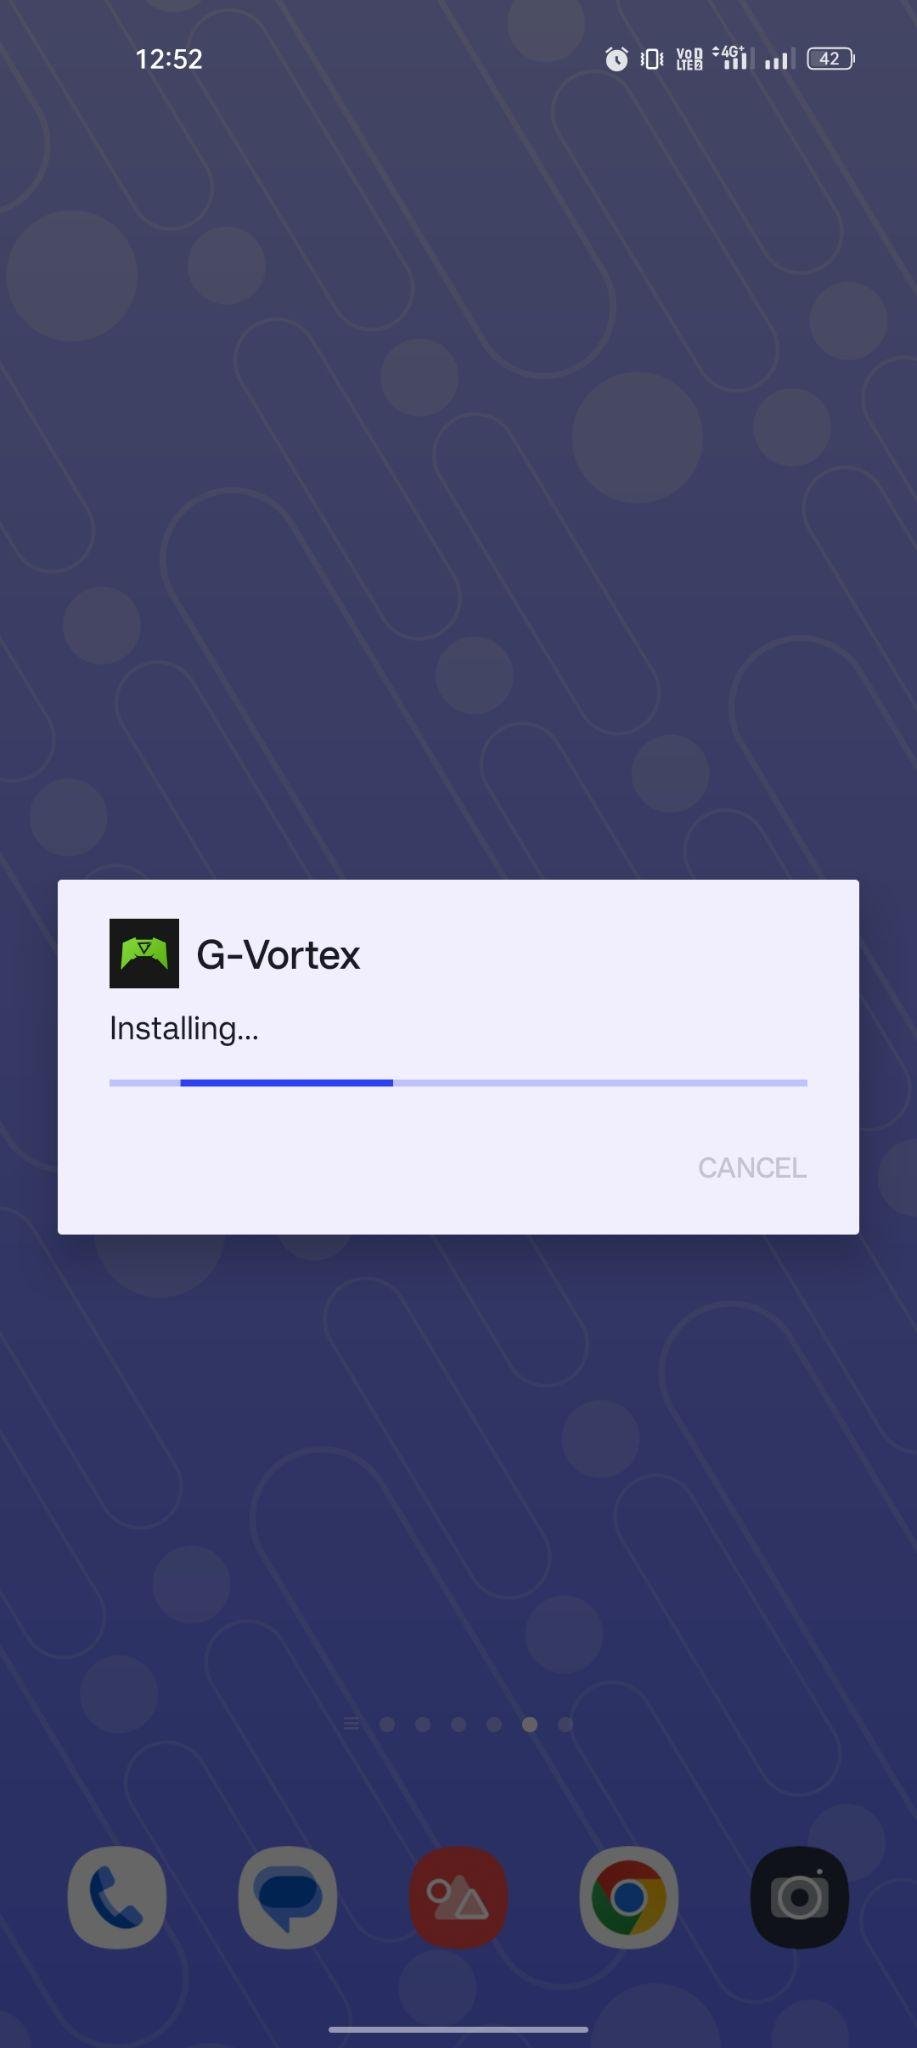 G-Vortex apk installing